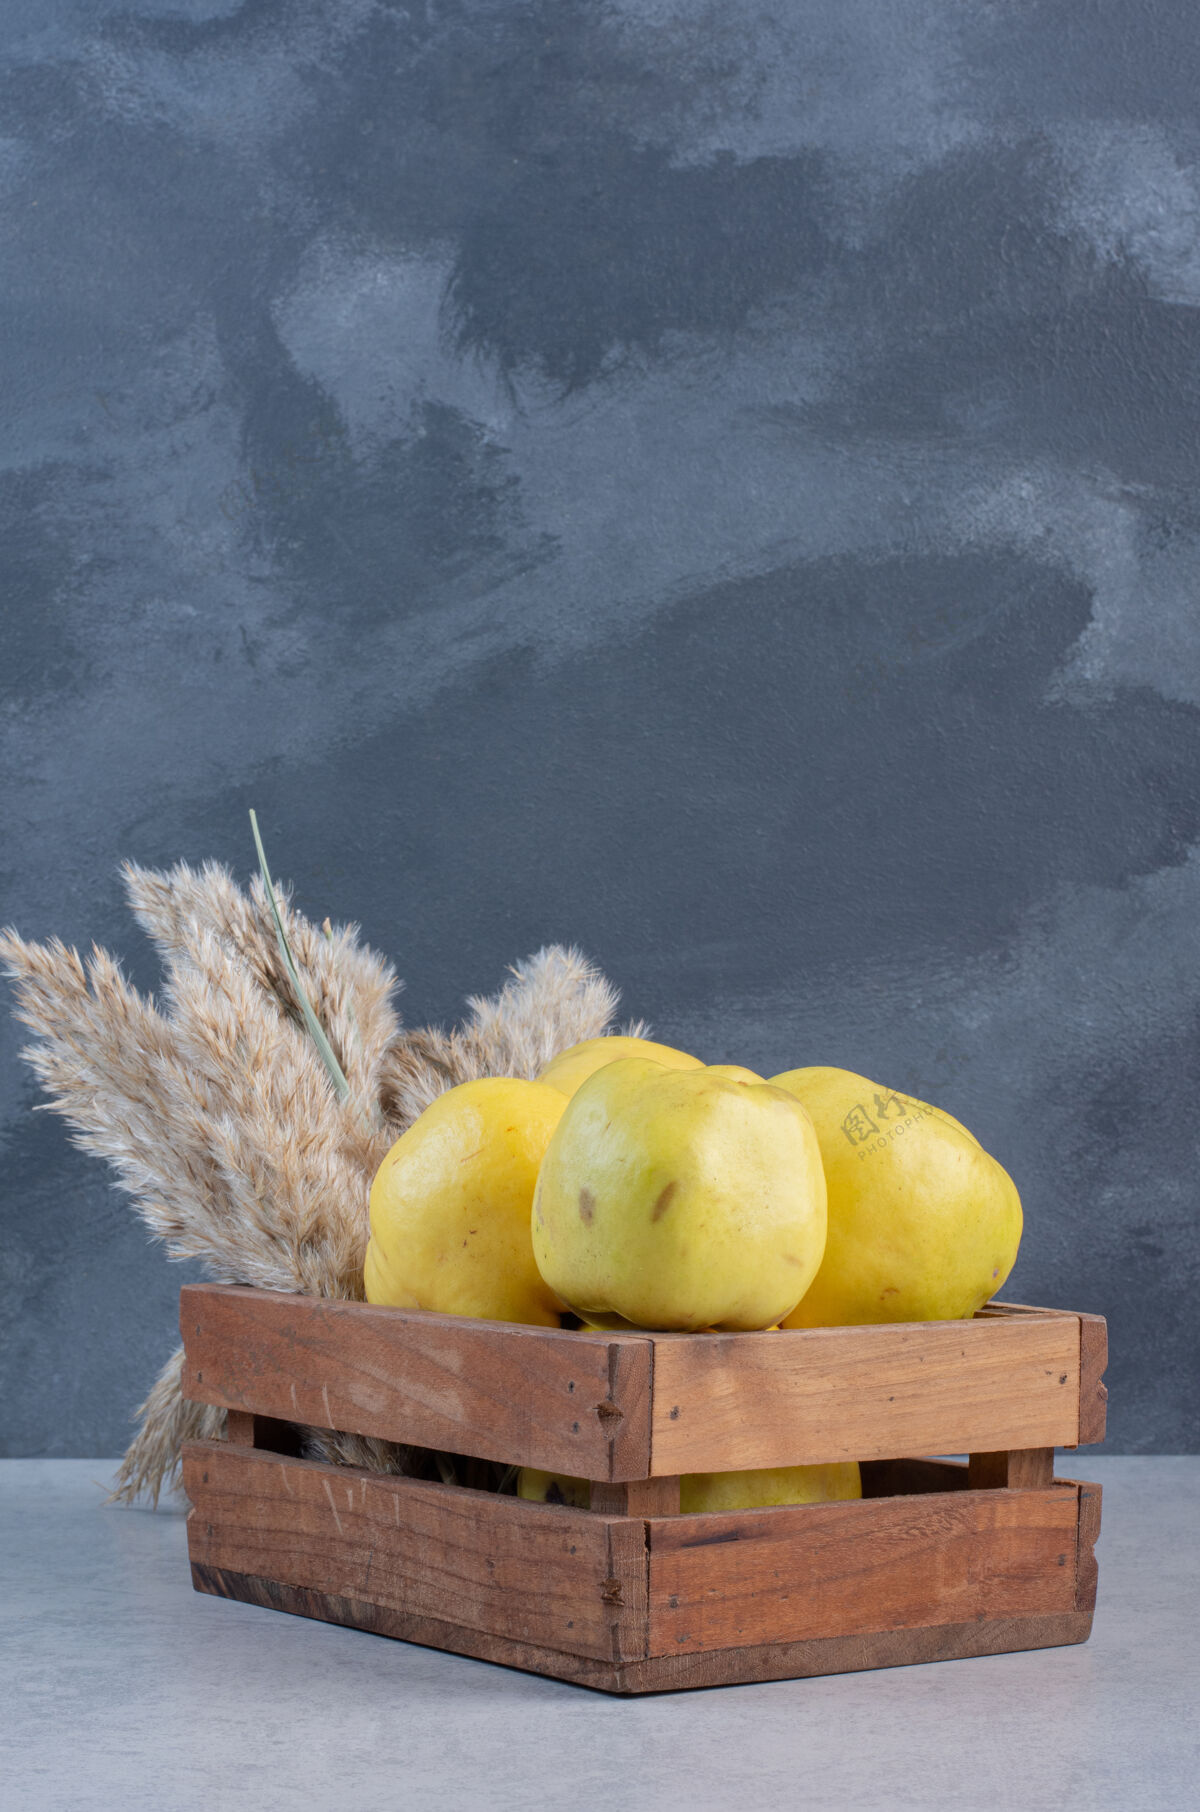 天然木篮里苹果木瓜的特写照片特写水果餐桌